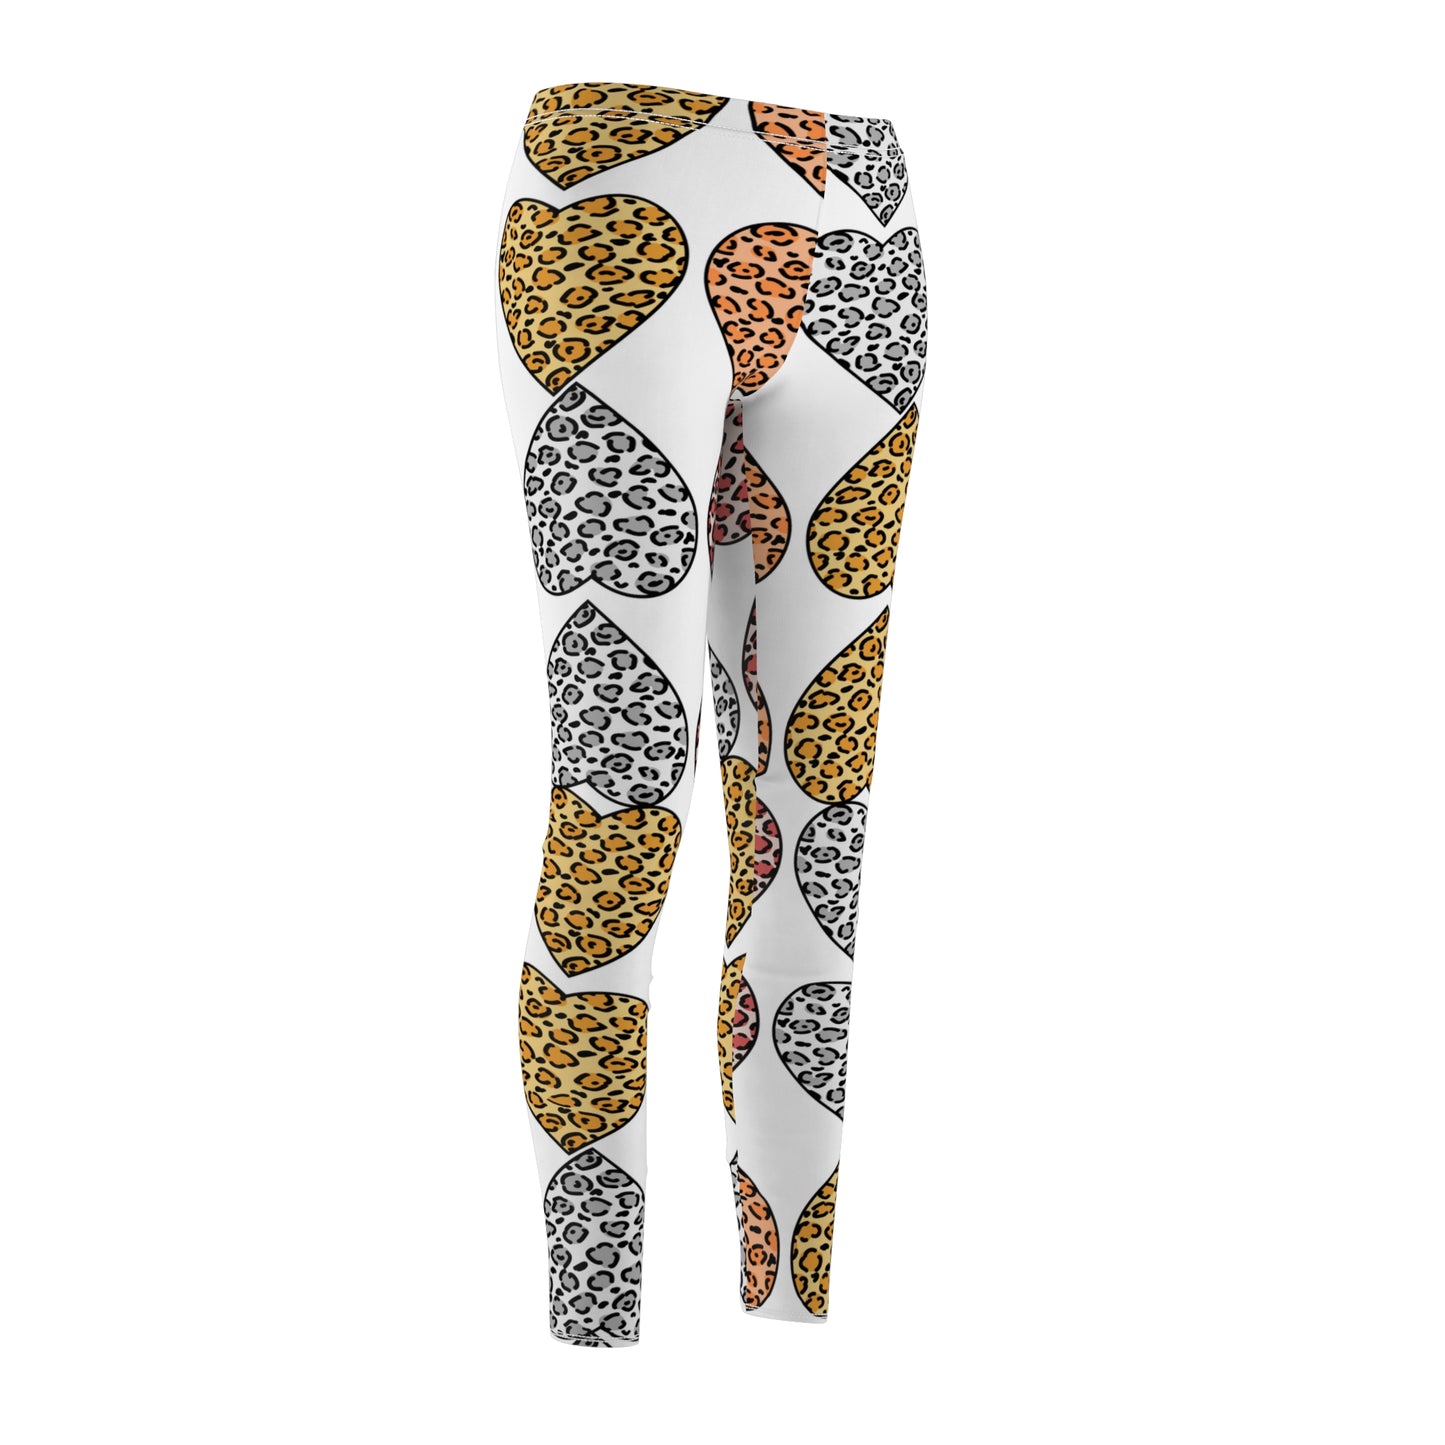 Leopard Heart Cut & Sew Casual Leggings, best friend graduation gift, gift for best friend female, winter leggings